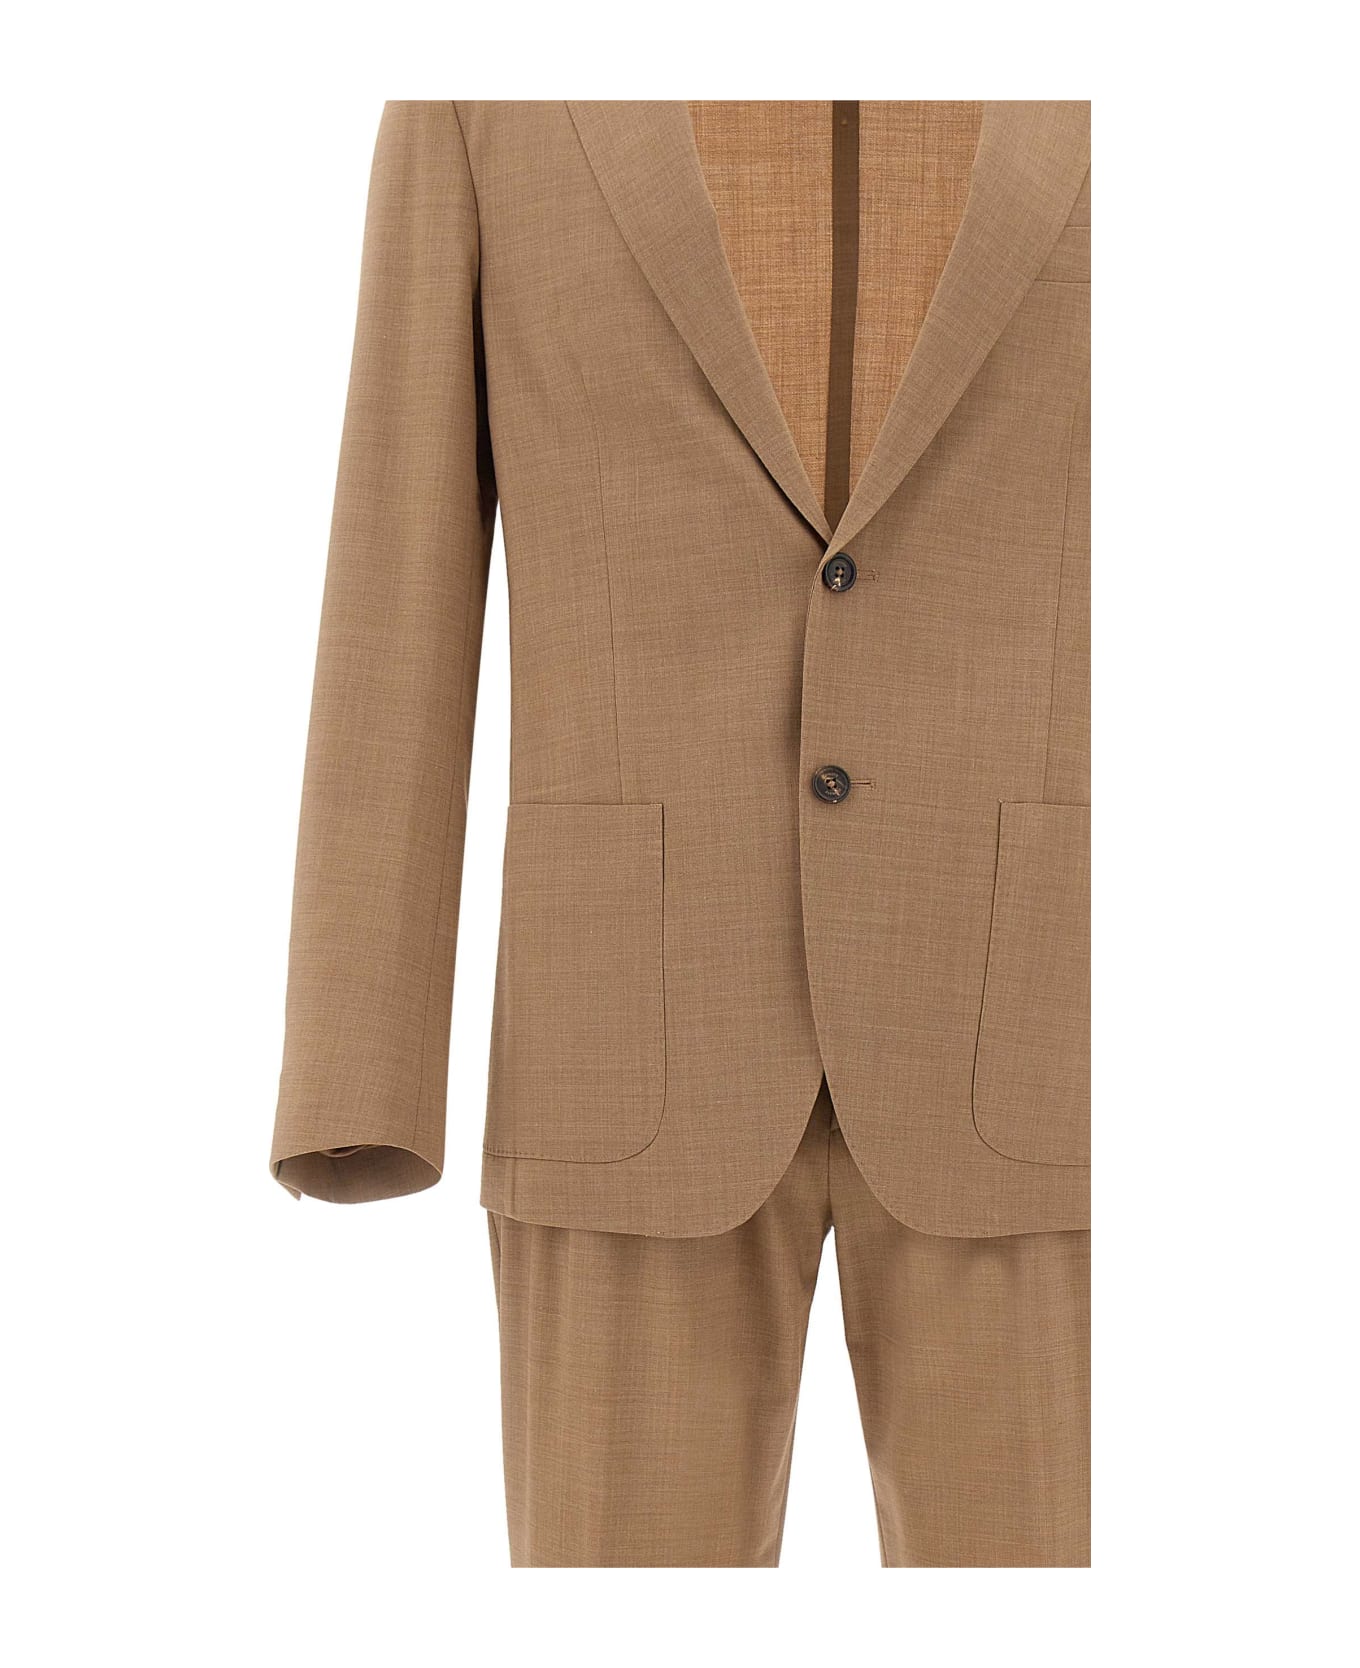 Eleventy Fresh Wool Two-piece Suit - BEIGE